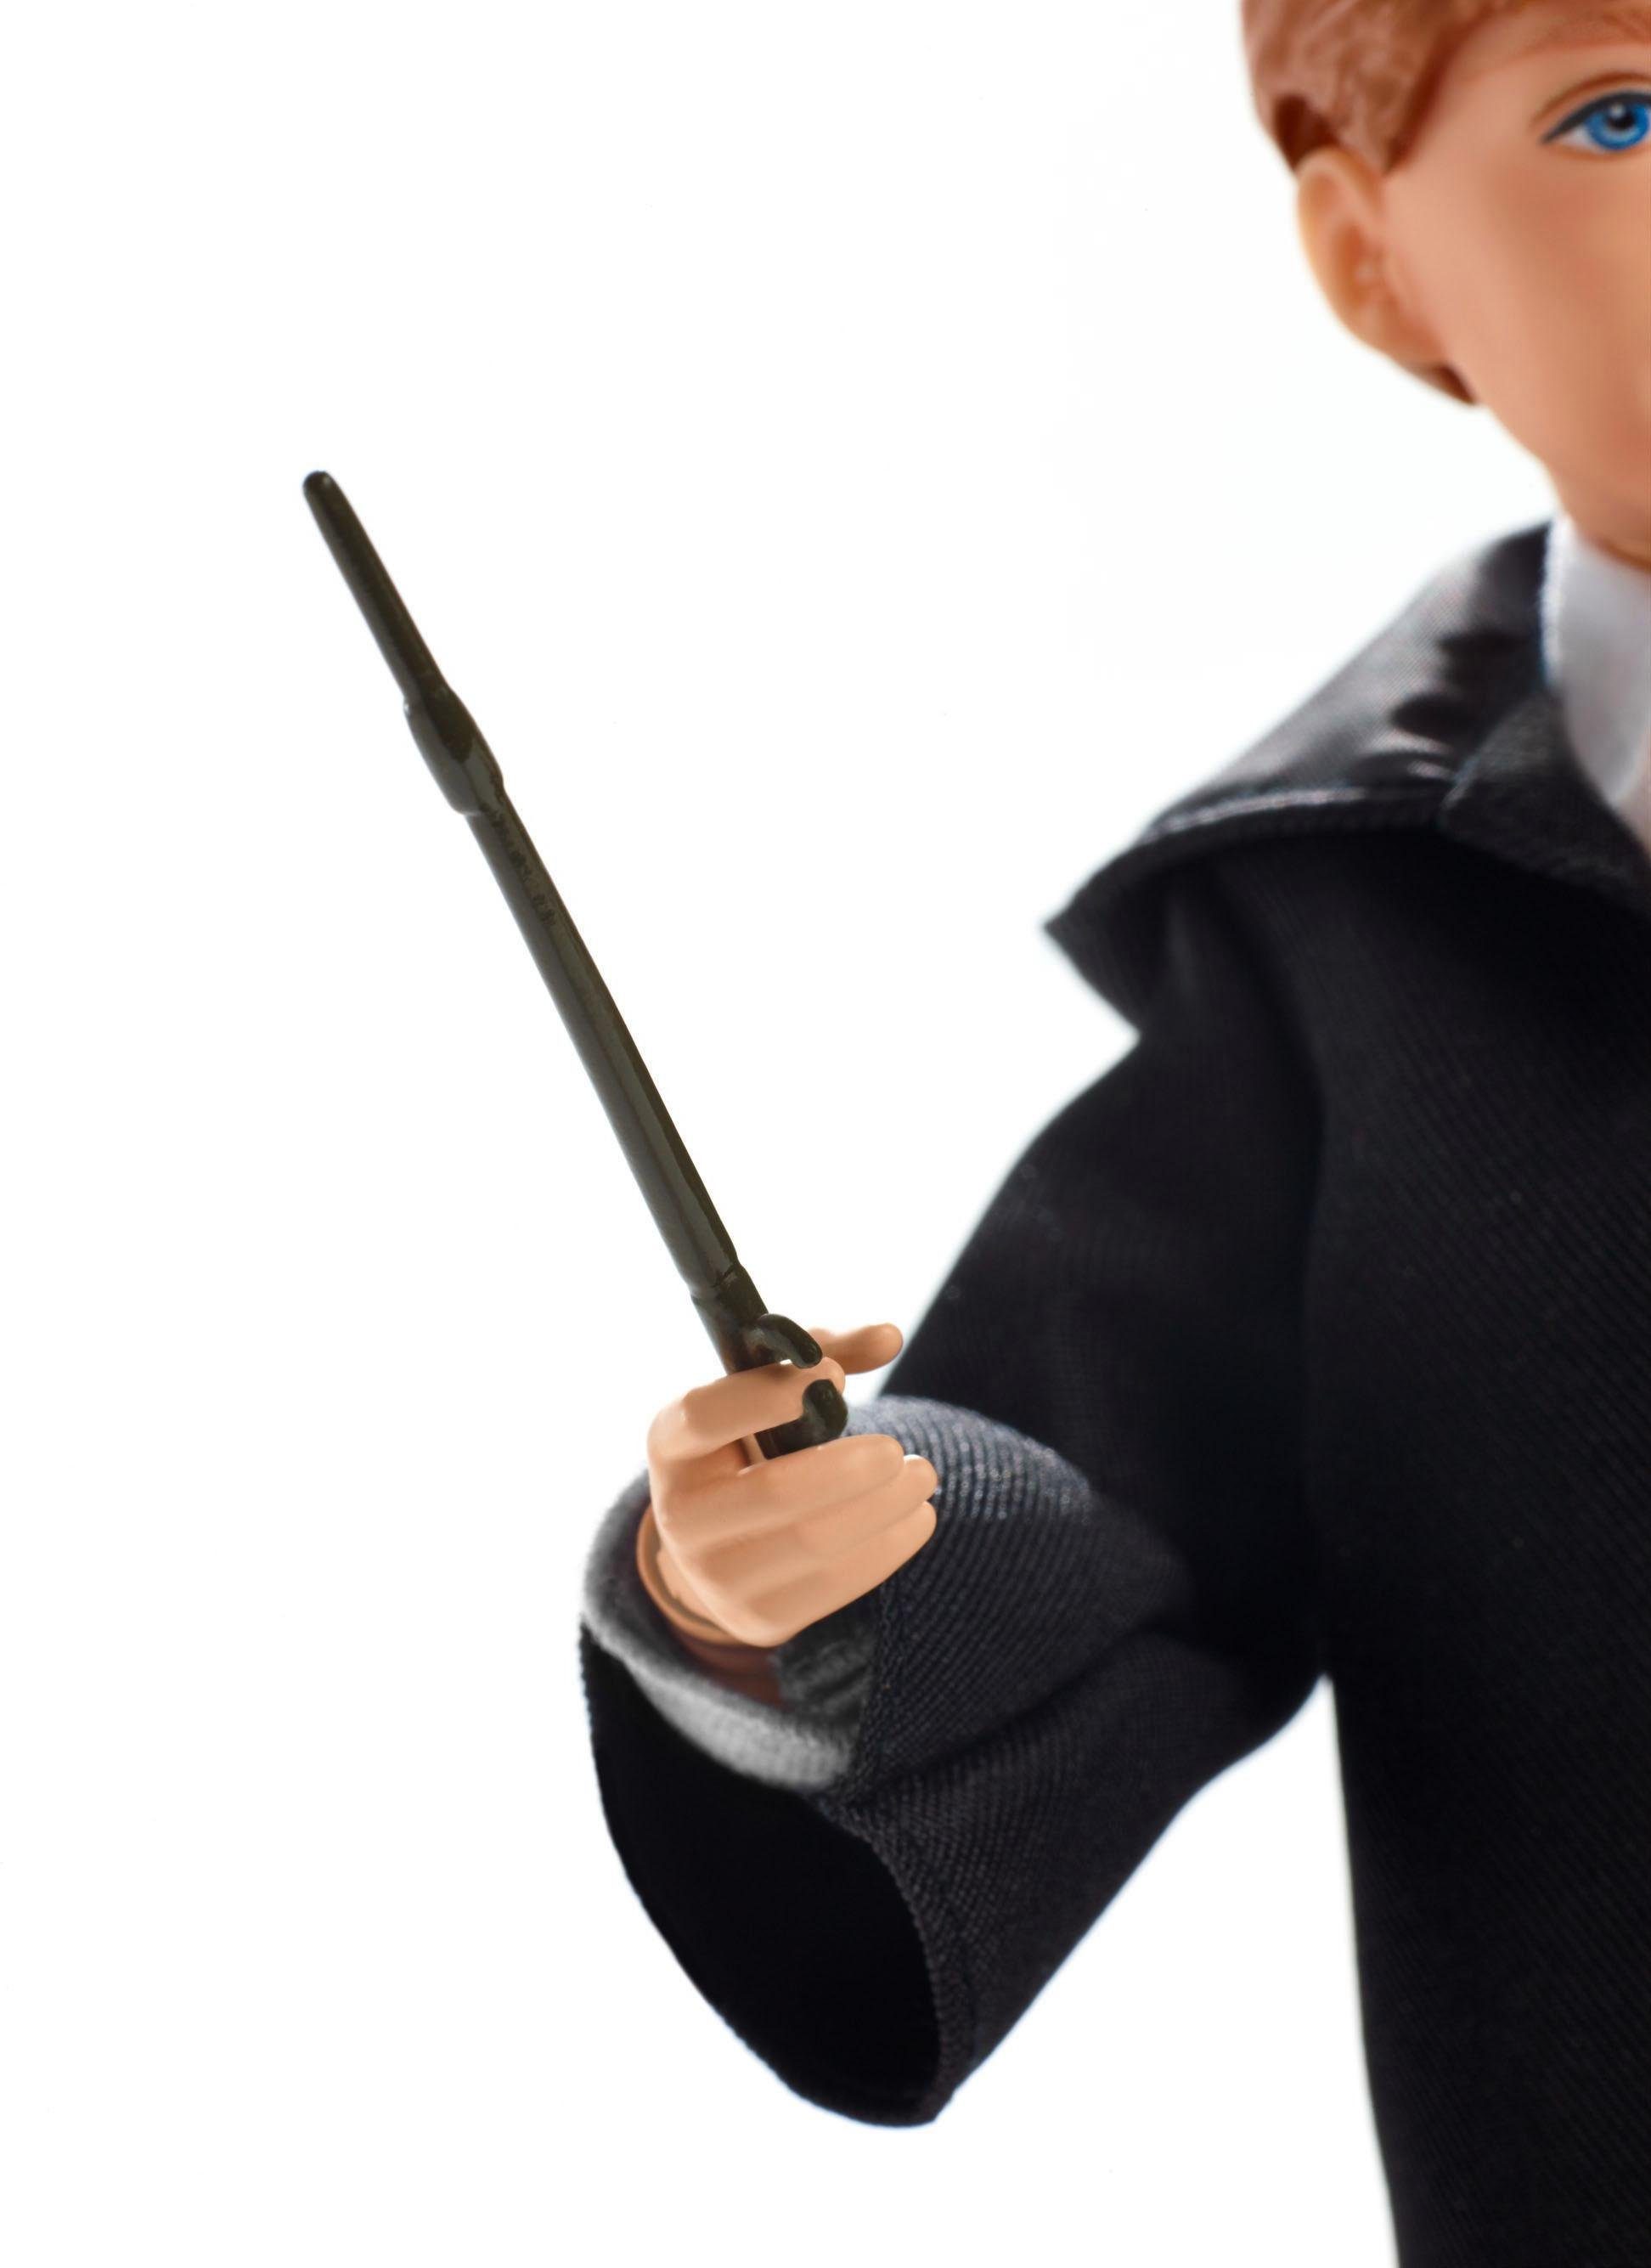 Potter und des Kammer Schreckens Mattel® Die - Ron Anziehpuppe Weasley Harry